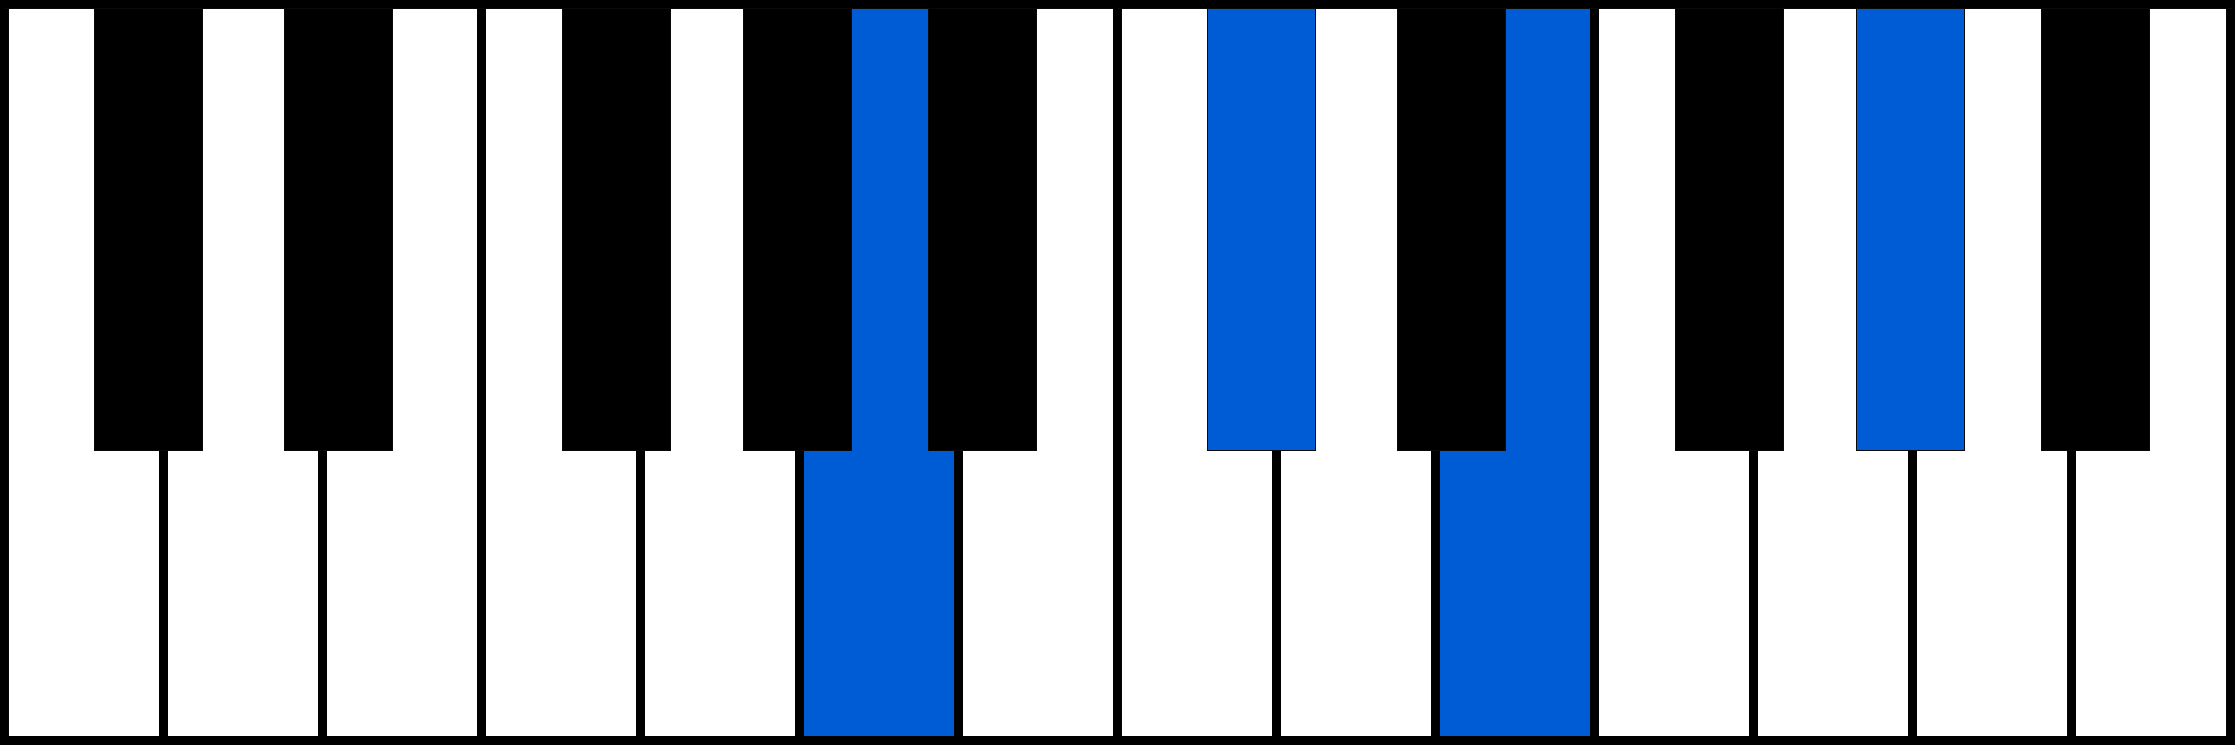 Amaj7 piano chord